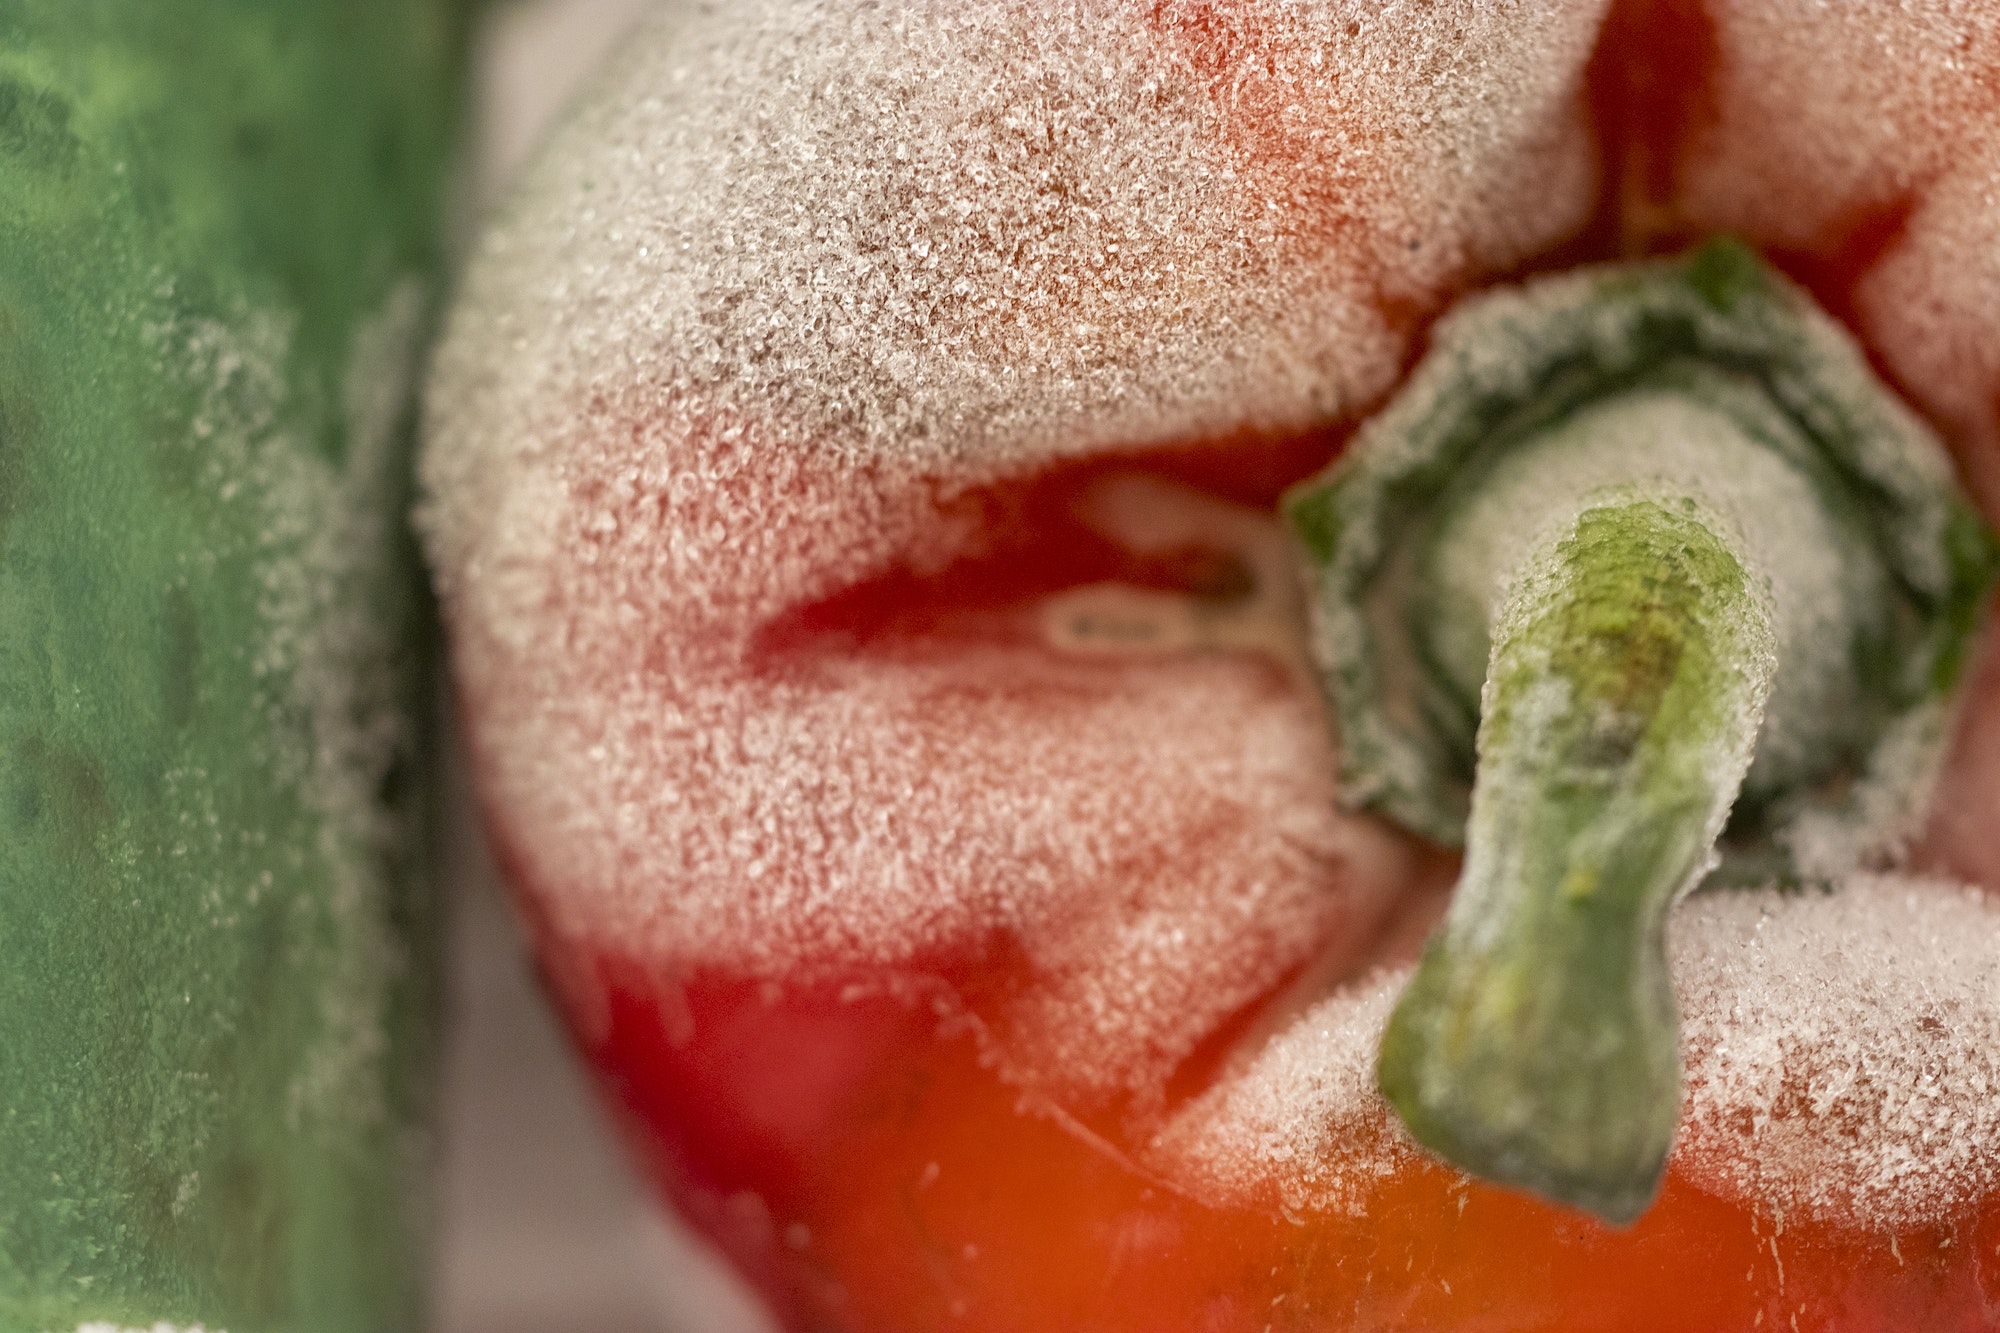 Closeup shot of a moldy red bell pepper